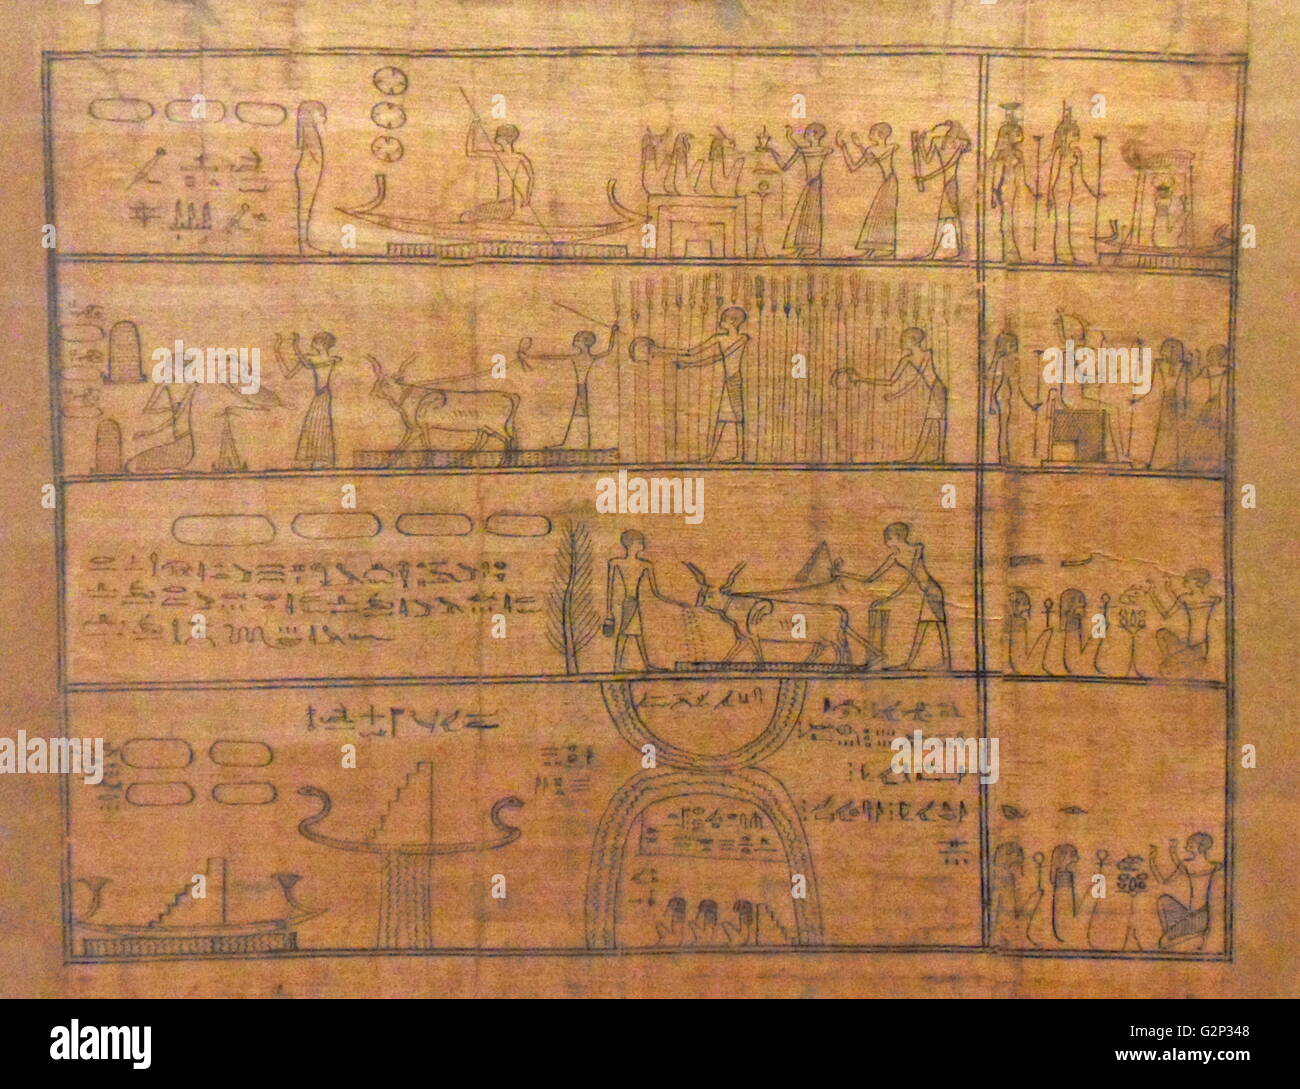 Frammento di papiro dal capitolo 110 del Libro Egiziano dei Morti. 'Djedhor lavorando nei campi dell'Aldilà". Periodo Tardo, 664-332 A.C. Mostra il campo di offerte in cui il defunto deve lavorare per il nutrimento. Foto Stock